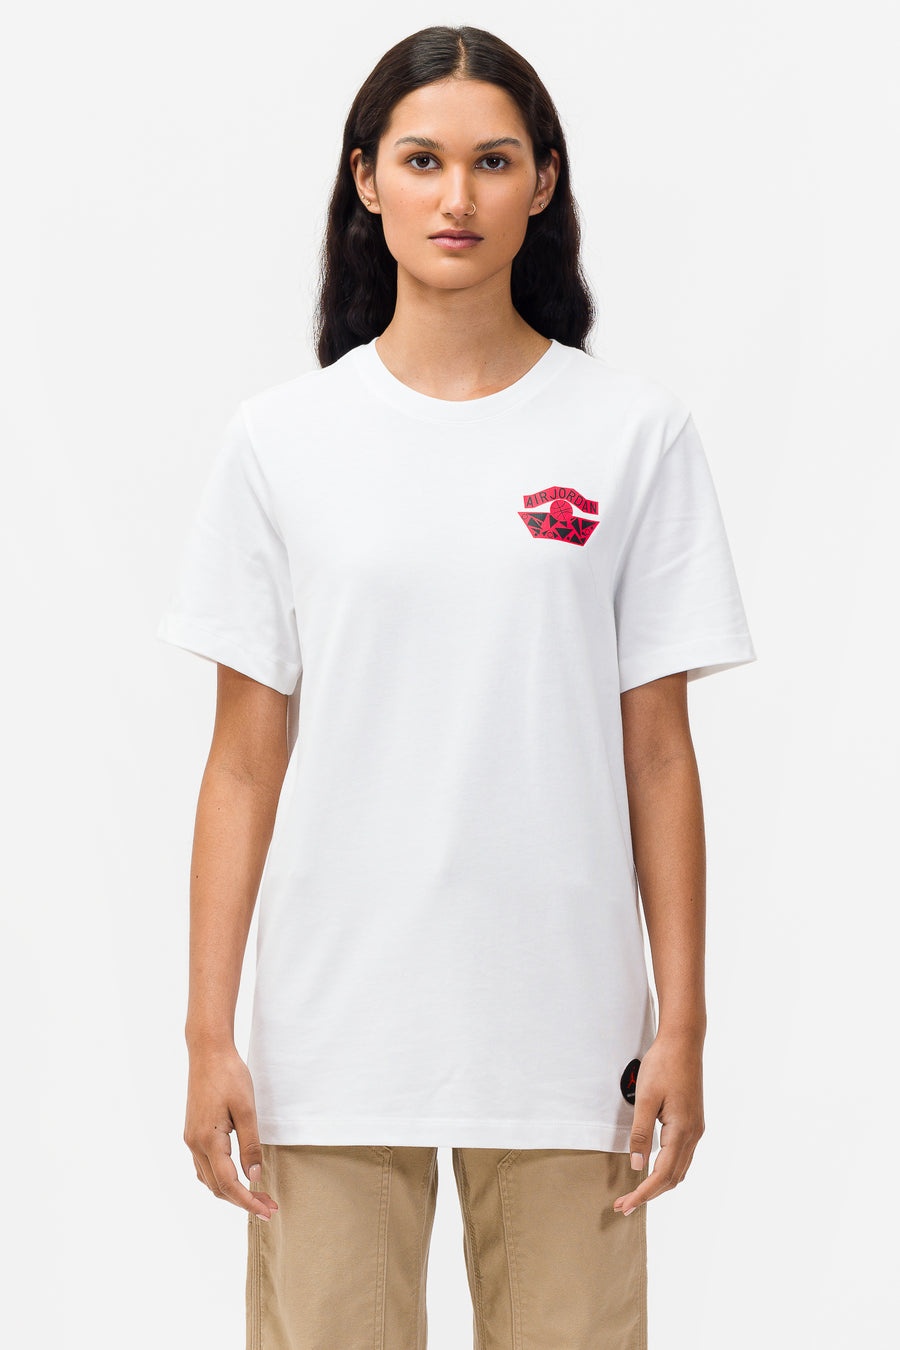 Jordan Nina Chanel Abney Logo T-Shirt in White